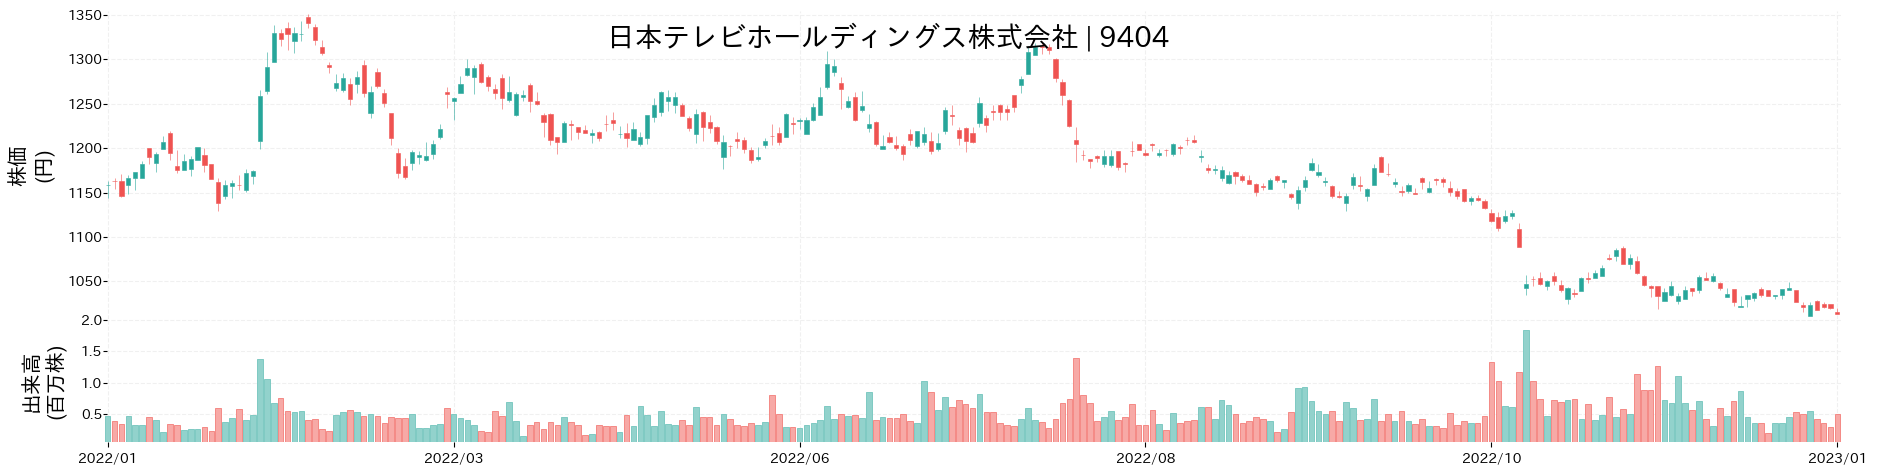 日本テレビホールディングスの株価推移(2022)